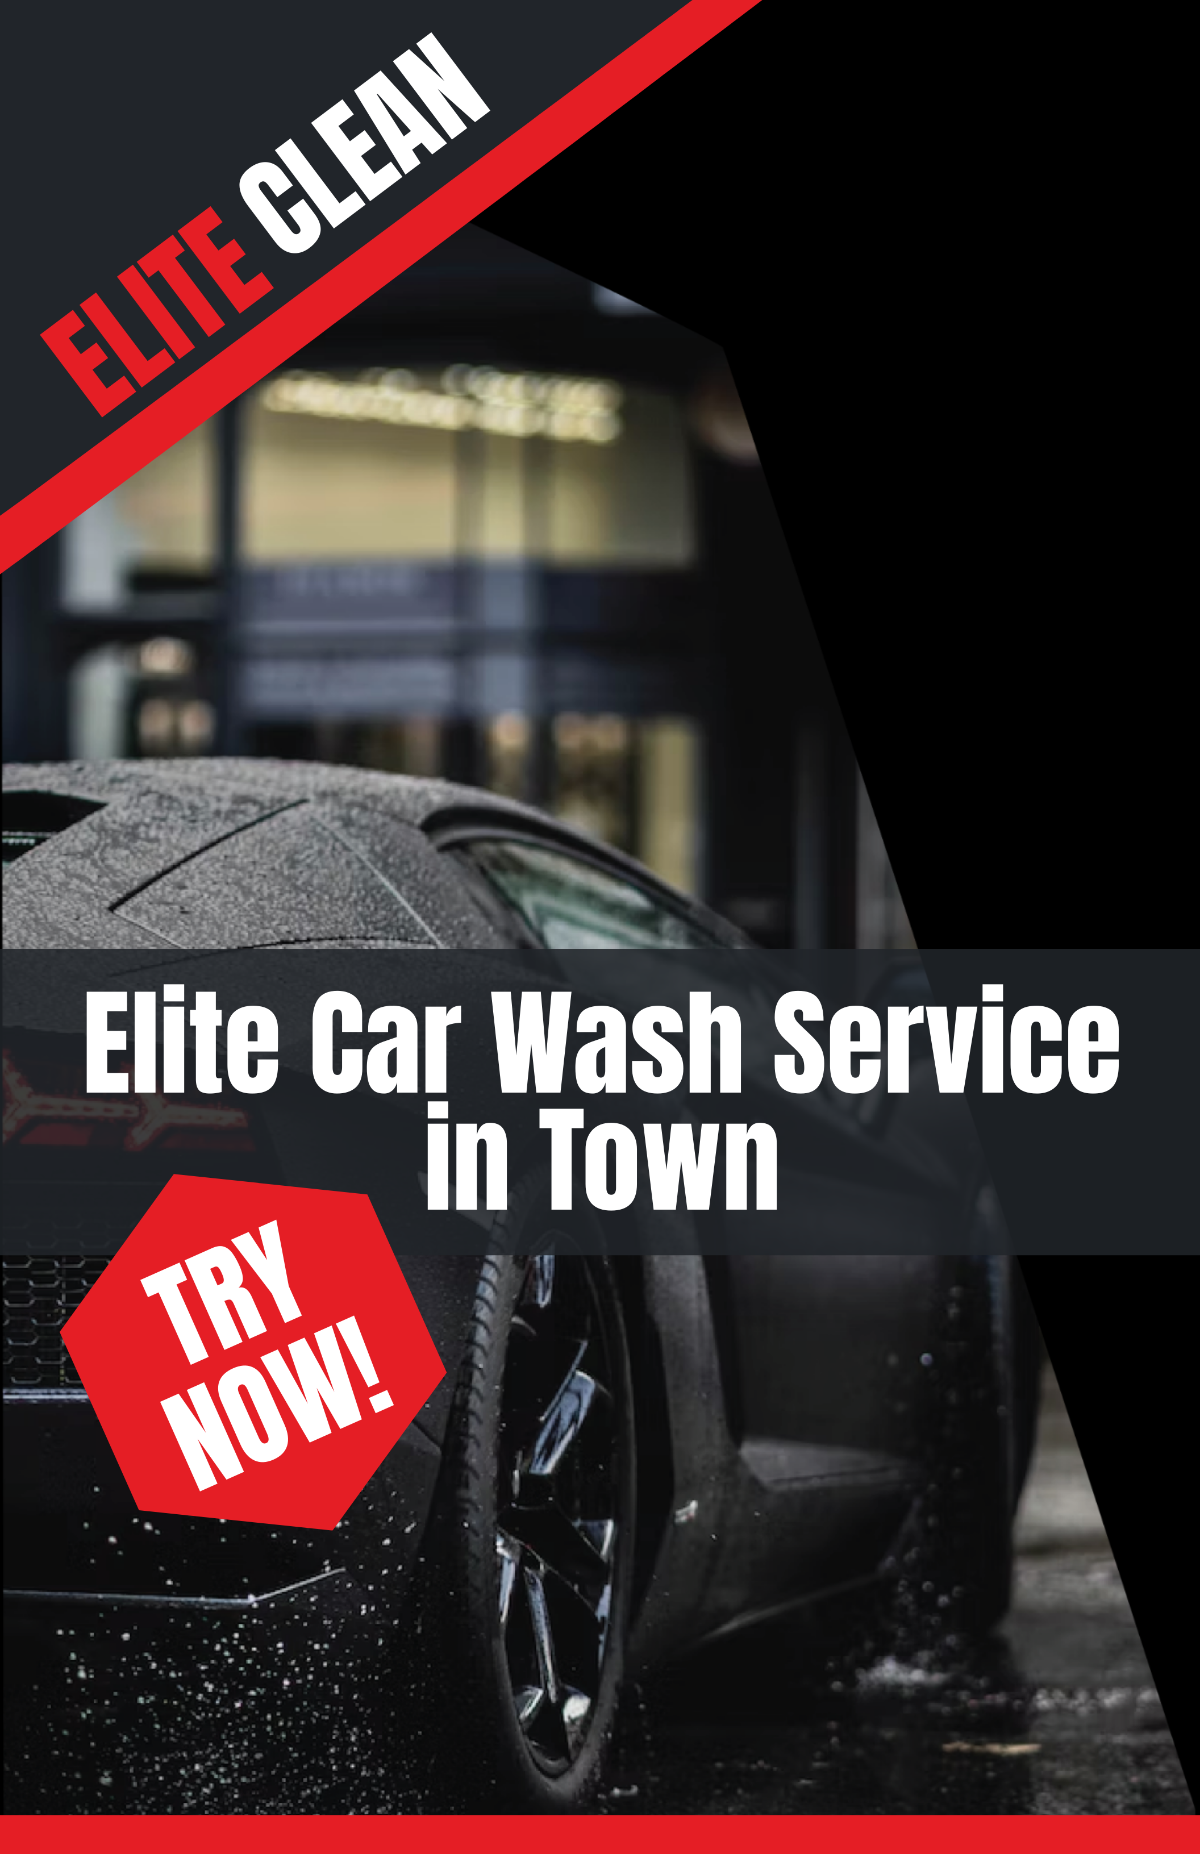 Sportscar Car Wash Poster